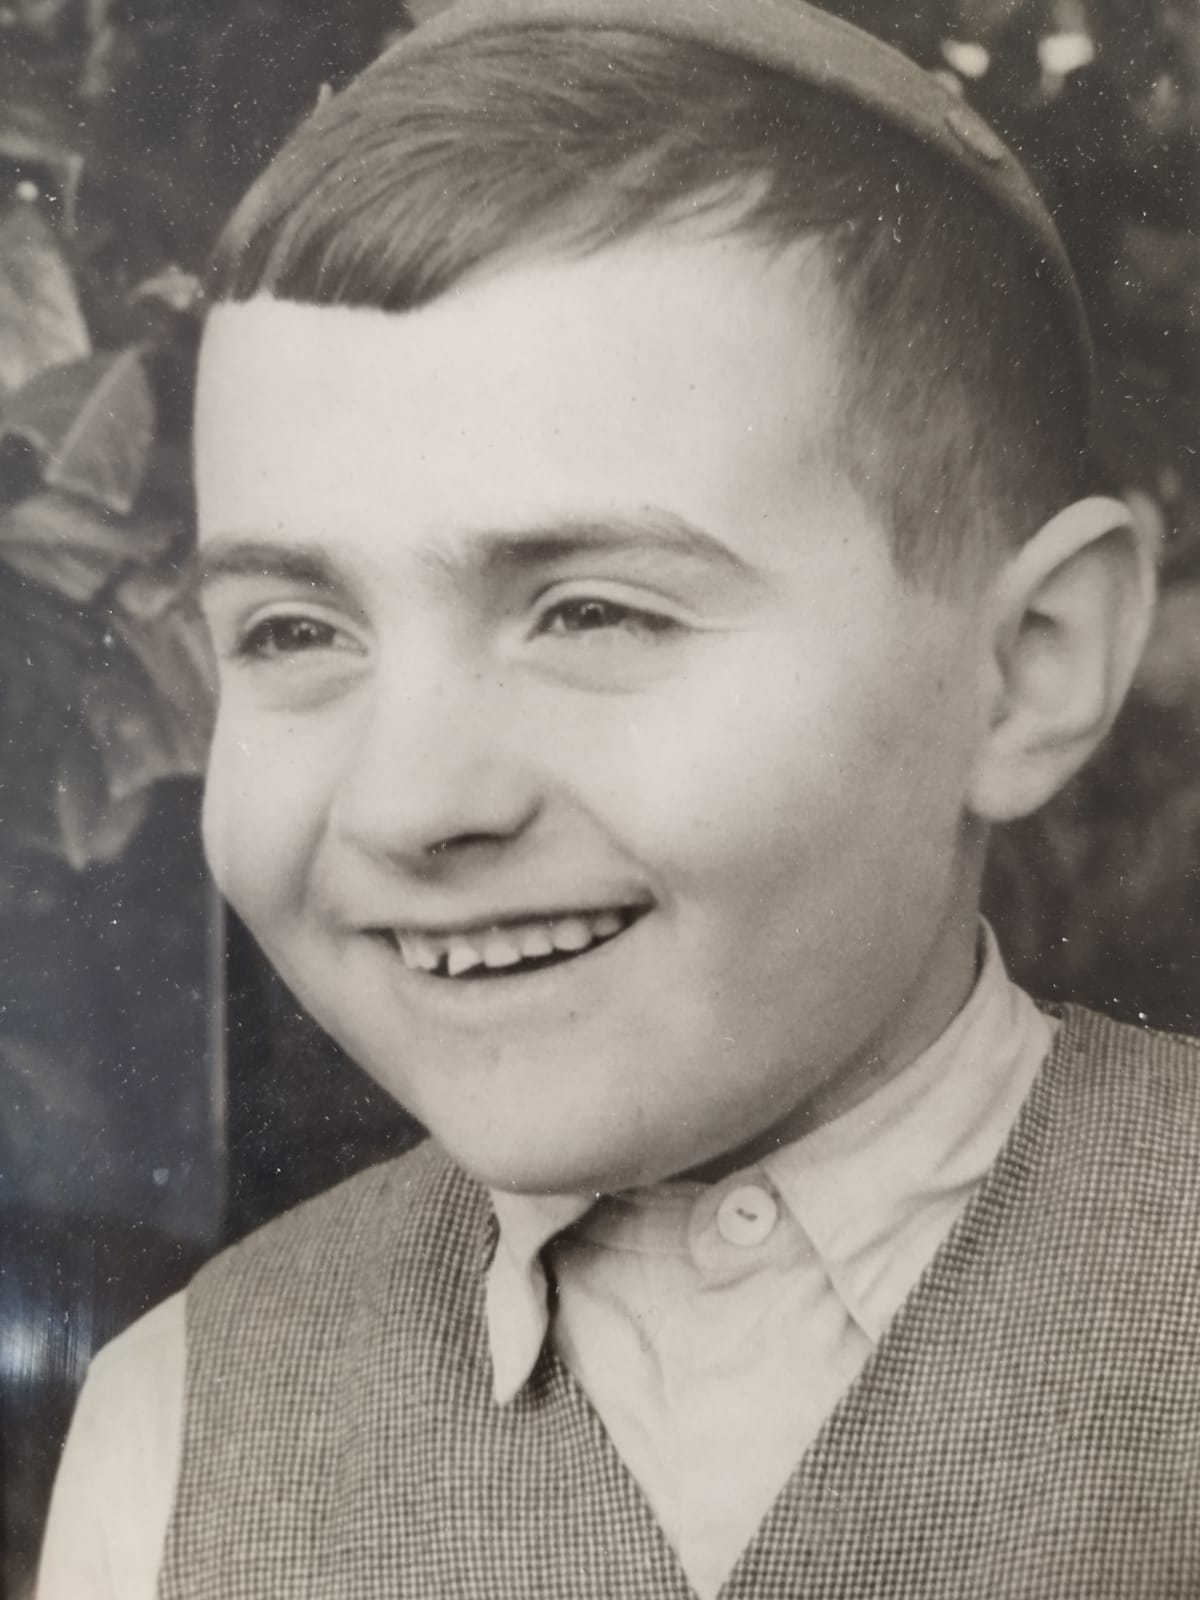 גיל 7 בגבעתיים, שנת 1963 למניינם